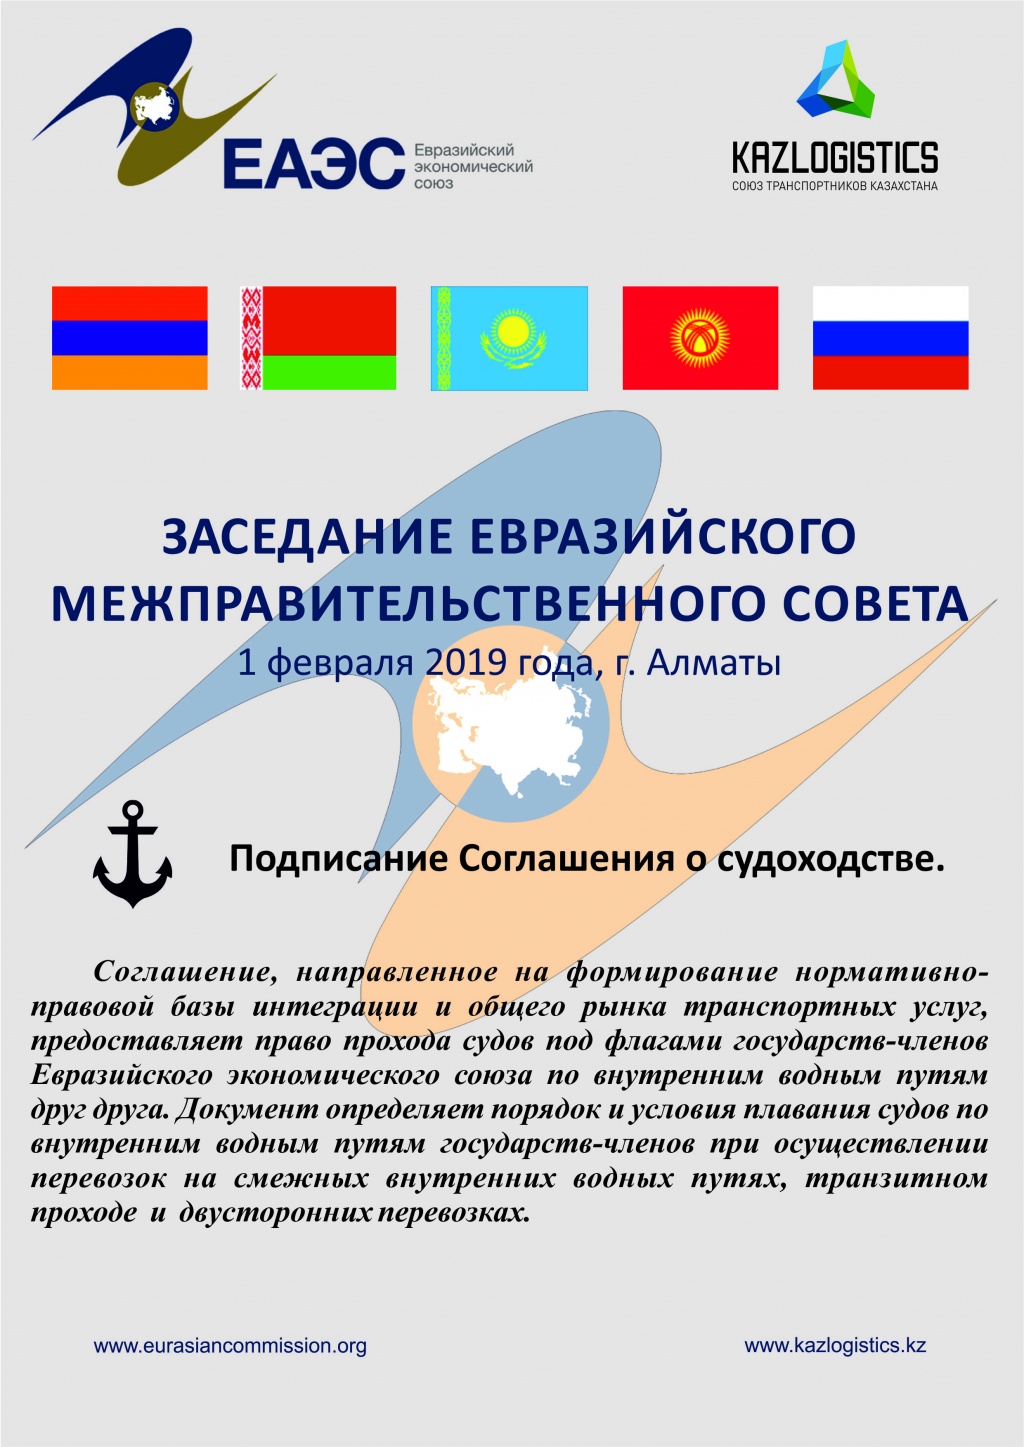 1 февраля 2019 года в городе Алматы на заседании Евразийского межправительственного совета планируется подписание Соглашения о судоходстве. 